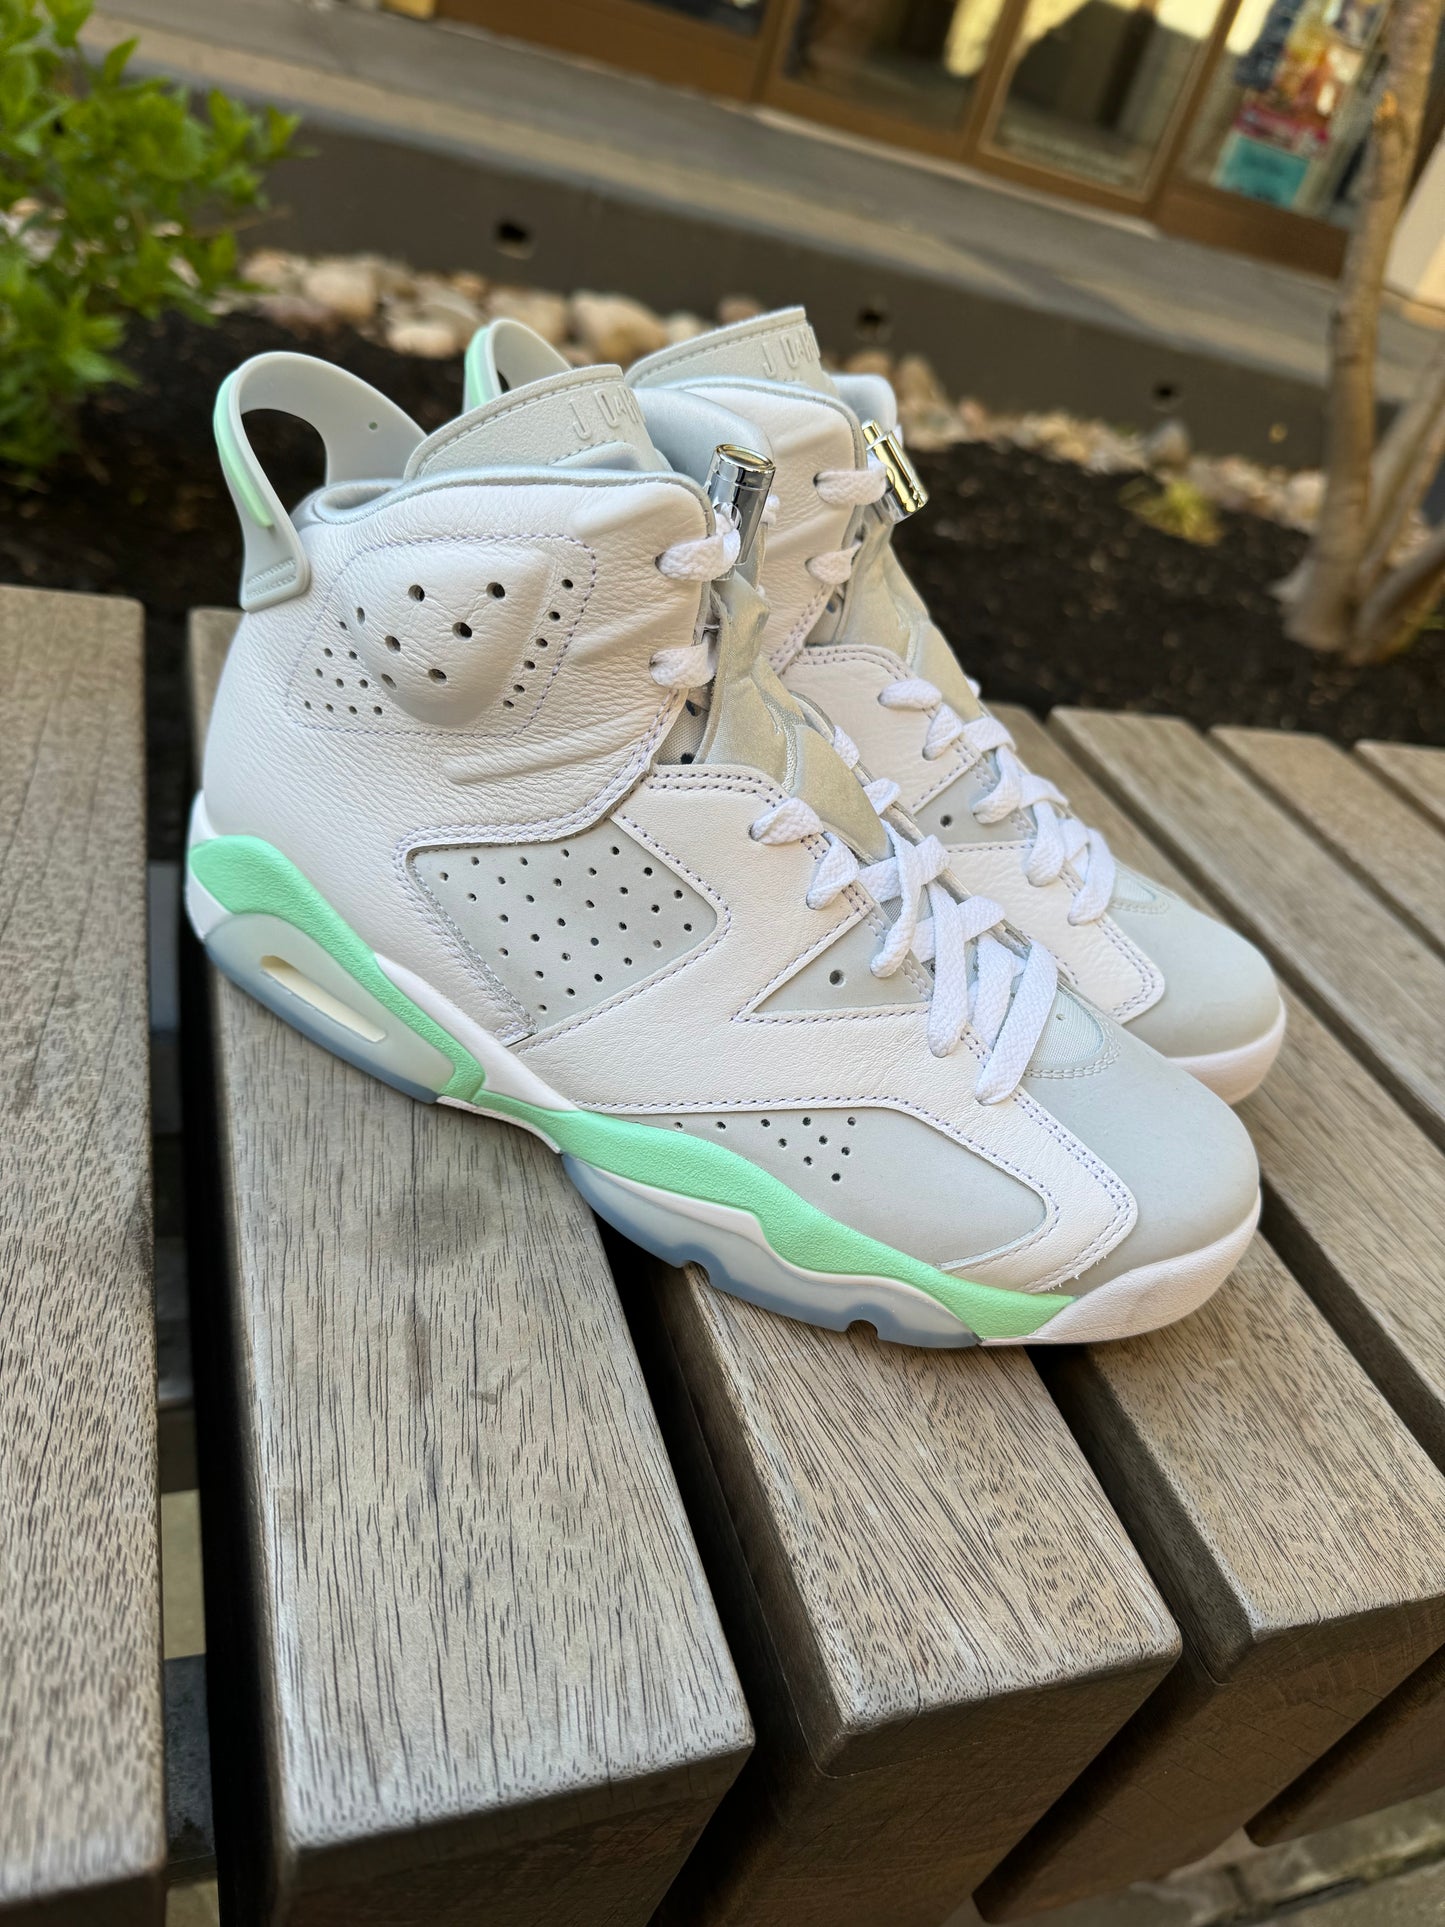 *USED* Air Jordan 6 “Mint Green” (GS)